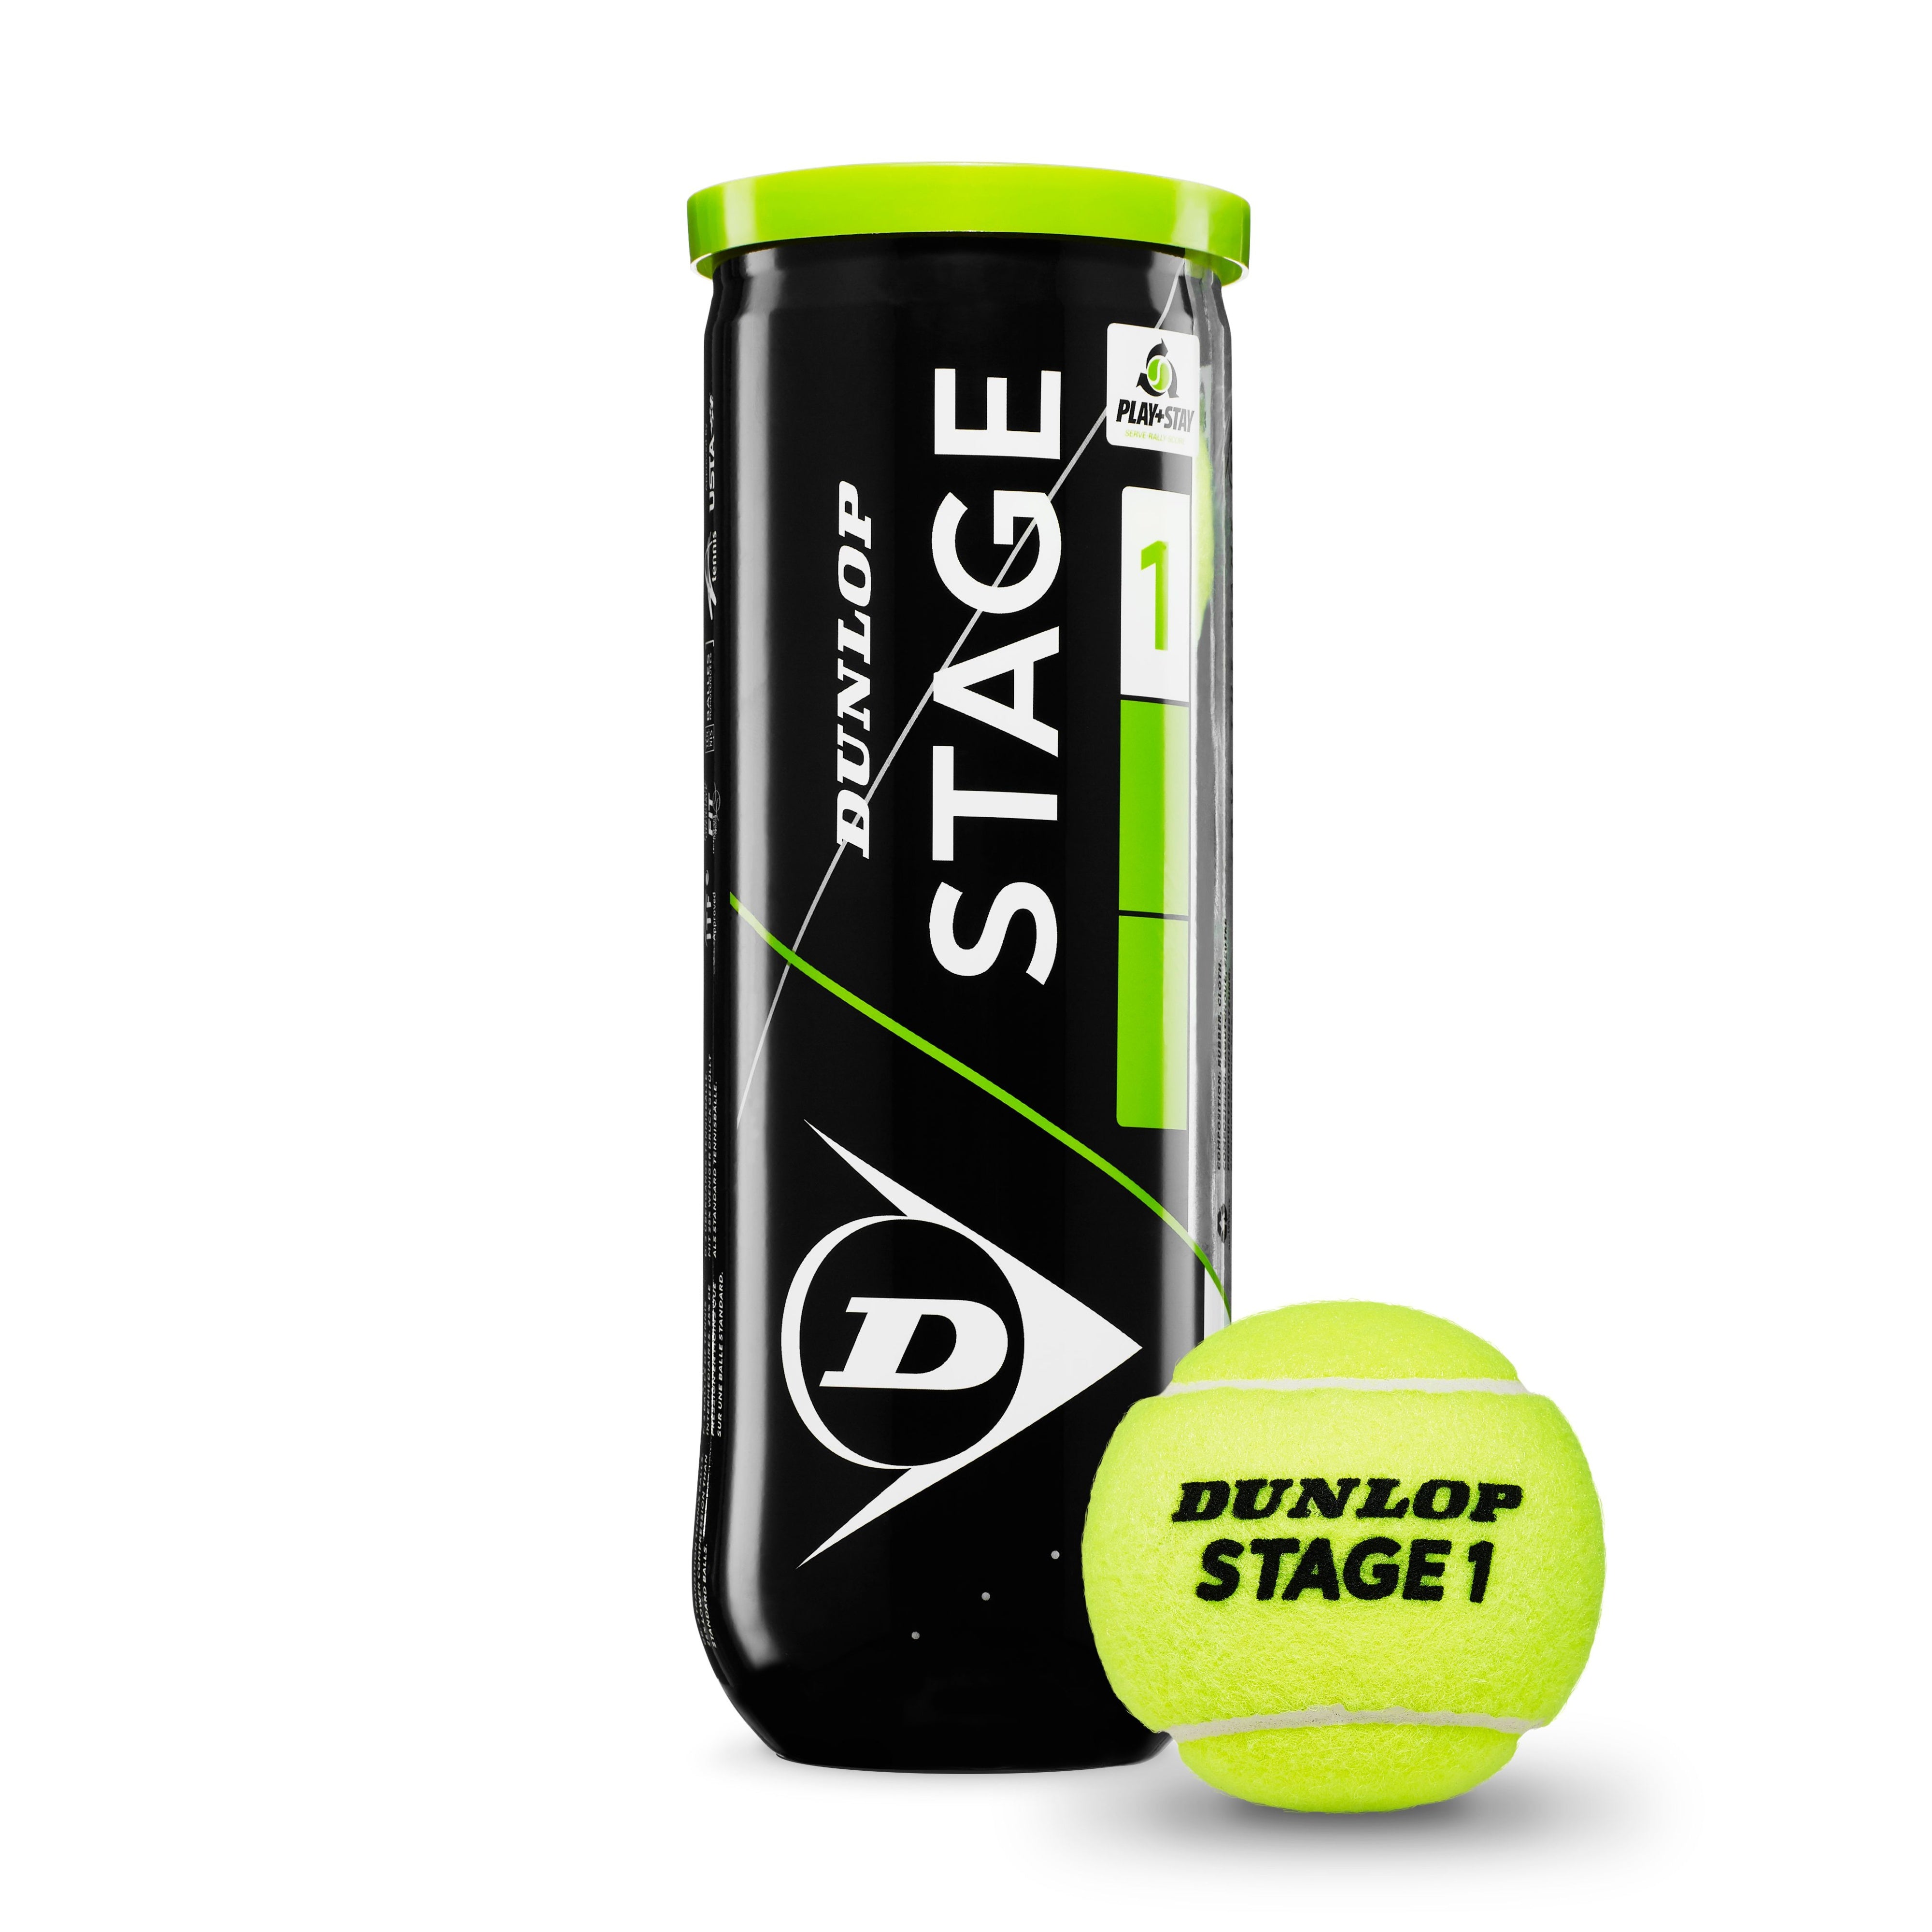 Dunlop Tennis Ball - Stage 1 Green (3 Balls Can)